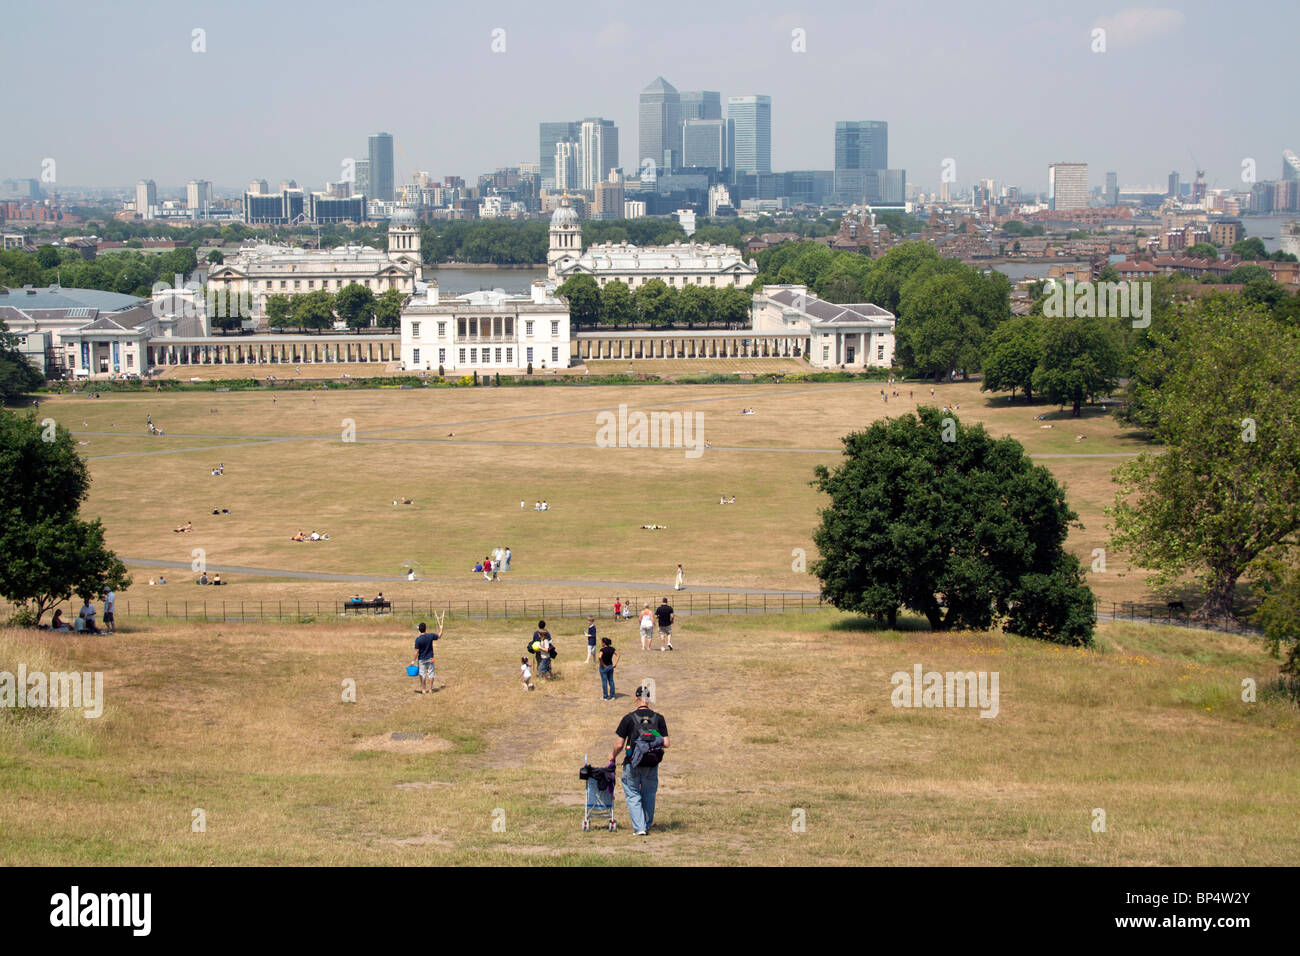 Il parco di Greenwich - Londra Foto Stock